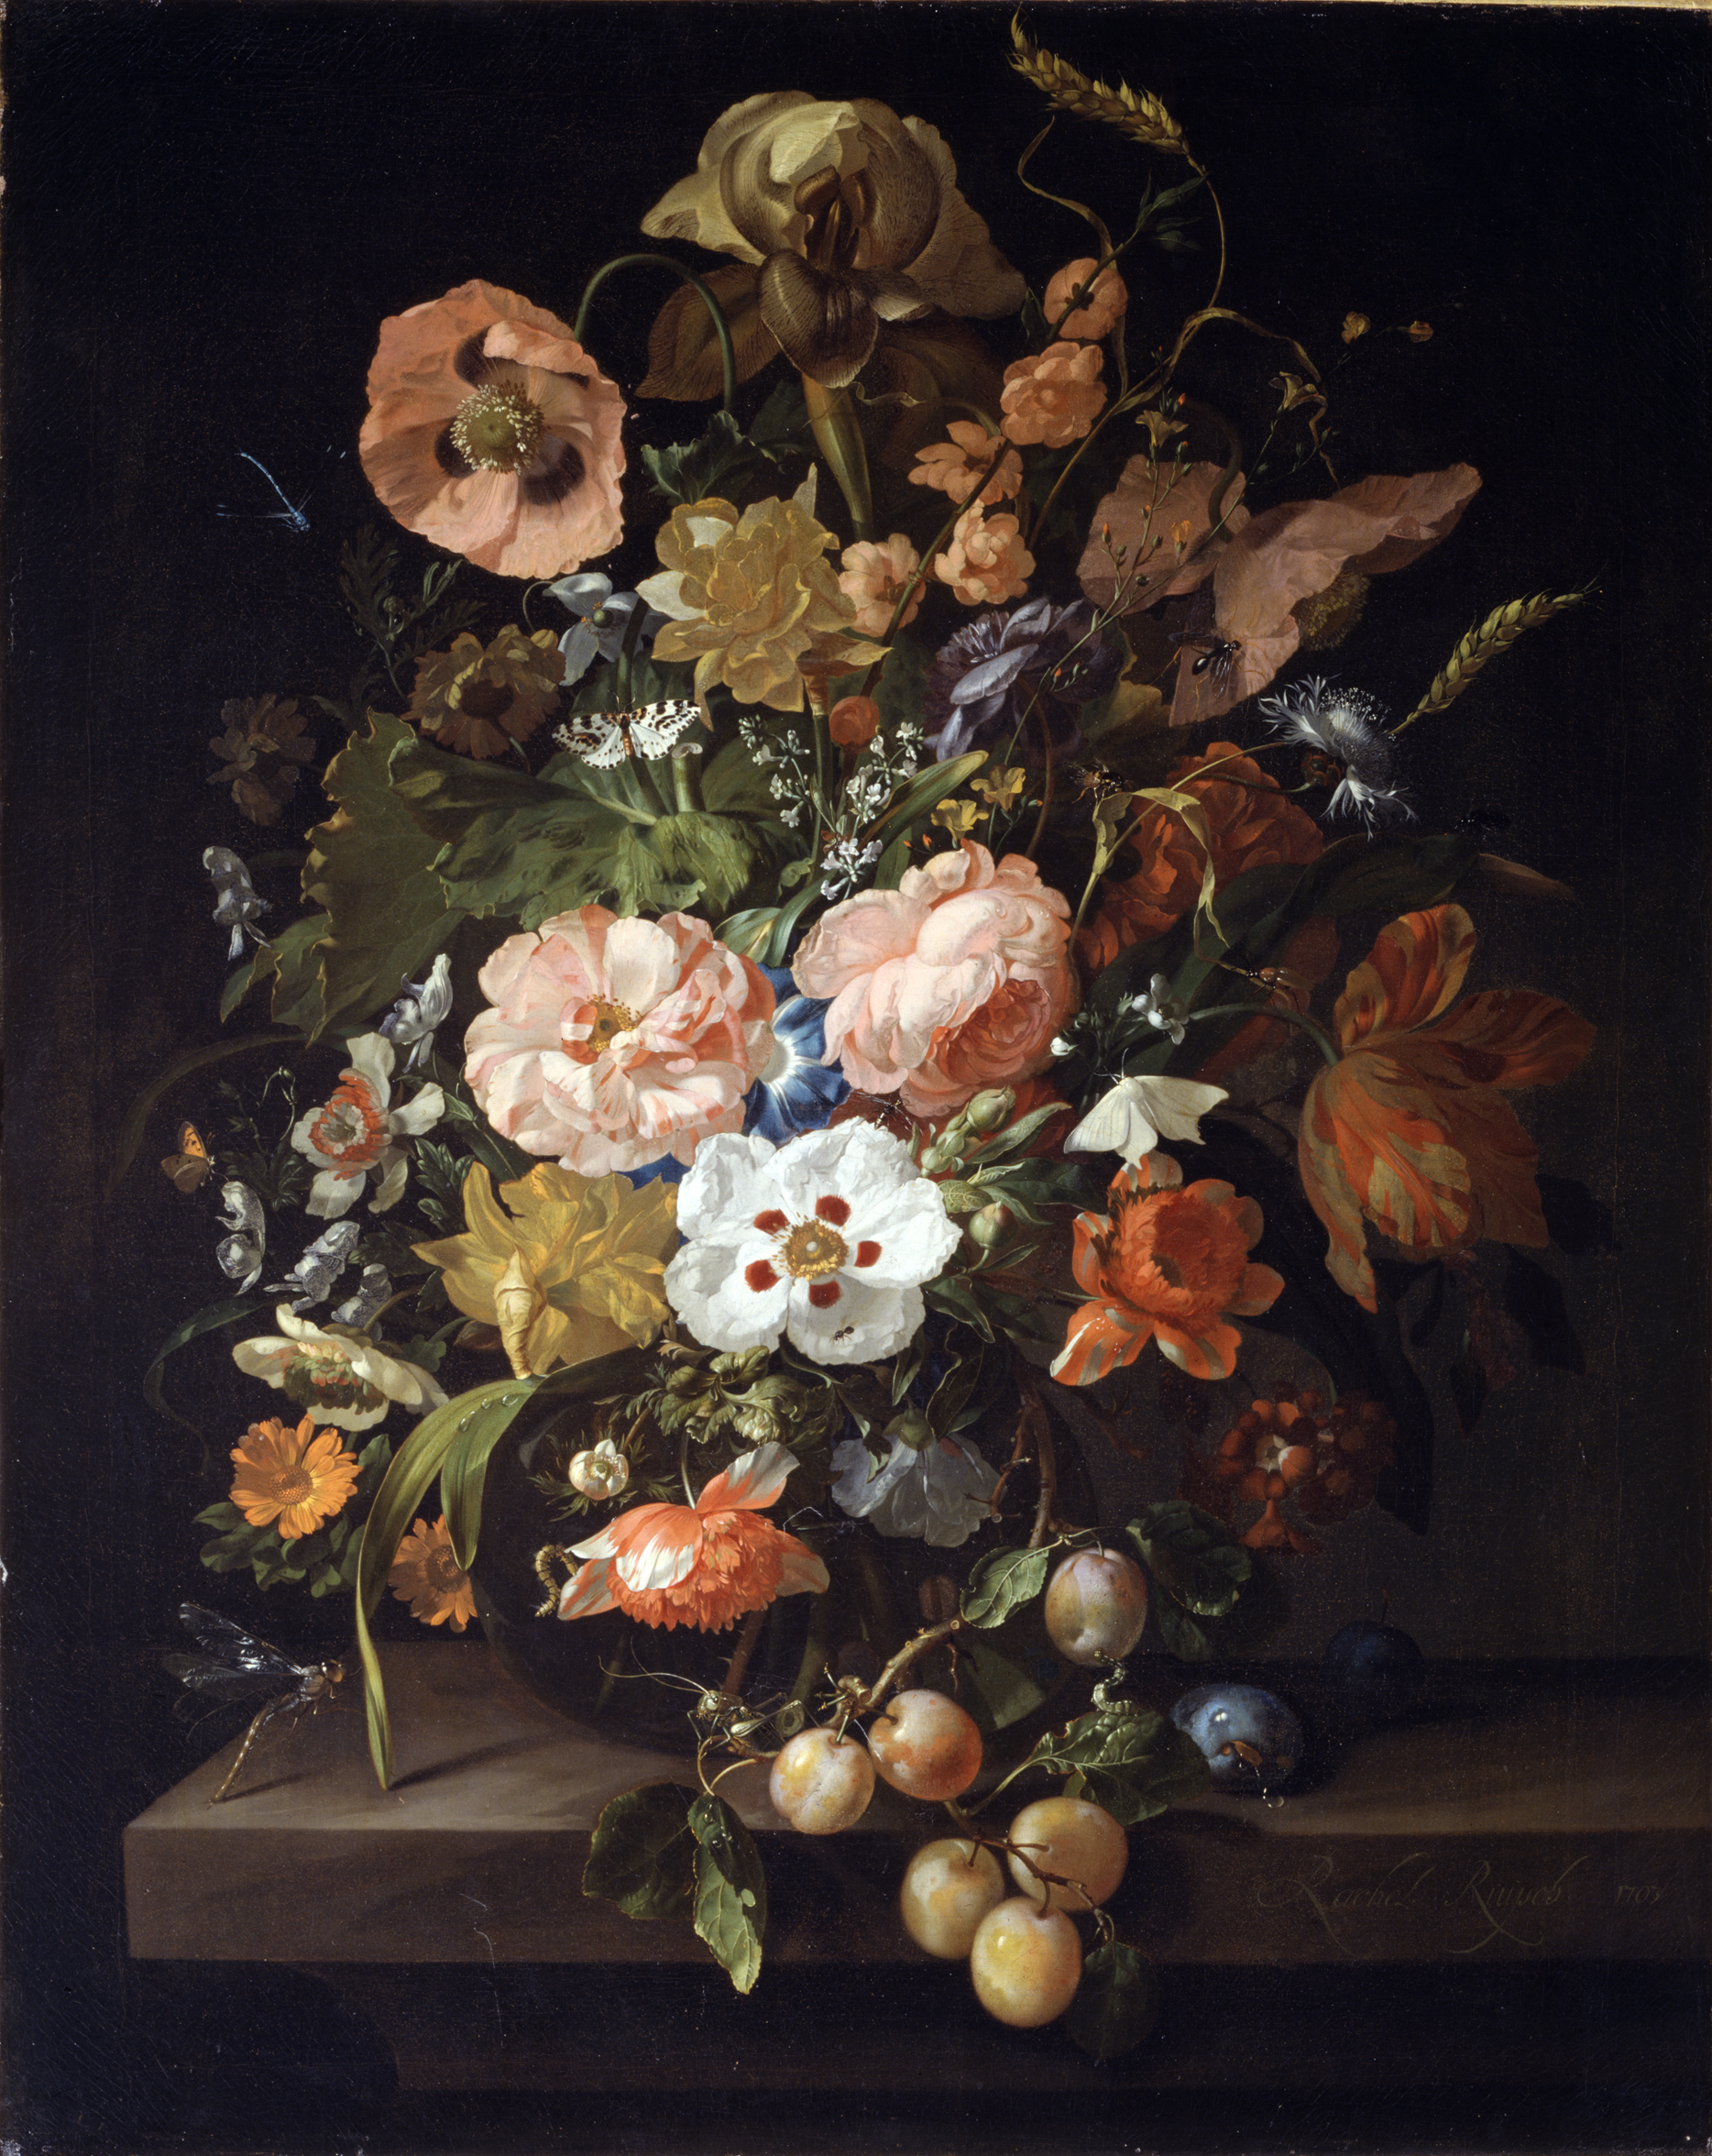 Nature Morte avec des Fleurs et des Fruits by Rachel Ruysch - 1703 Académie des beaux-arts de Vienne